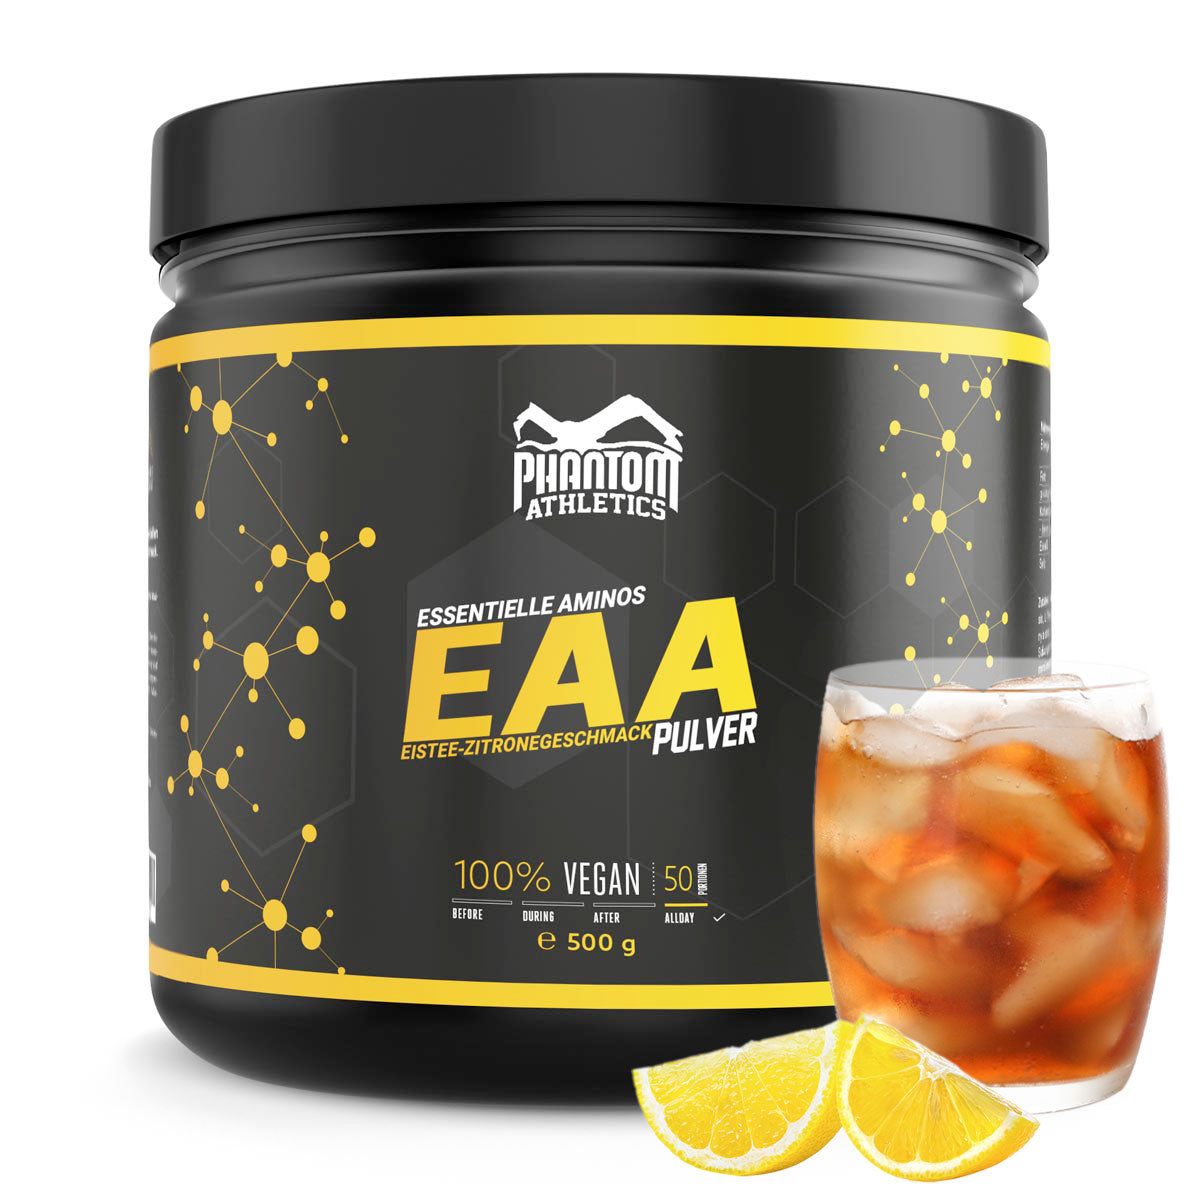 Phantom EAA - Essentielle Aminosäuren mit Eistee Zitronen Geschmack. Für eine optimale Versorgung im Kampfsport.